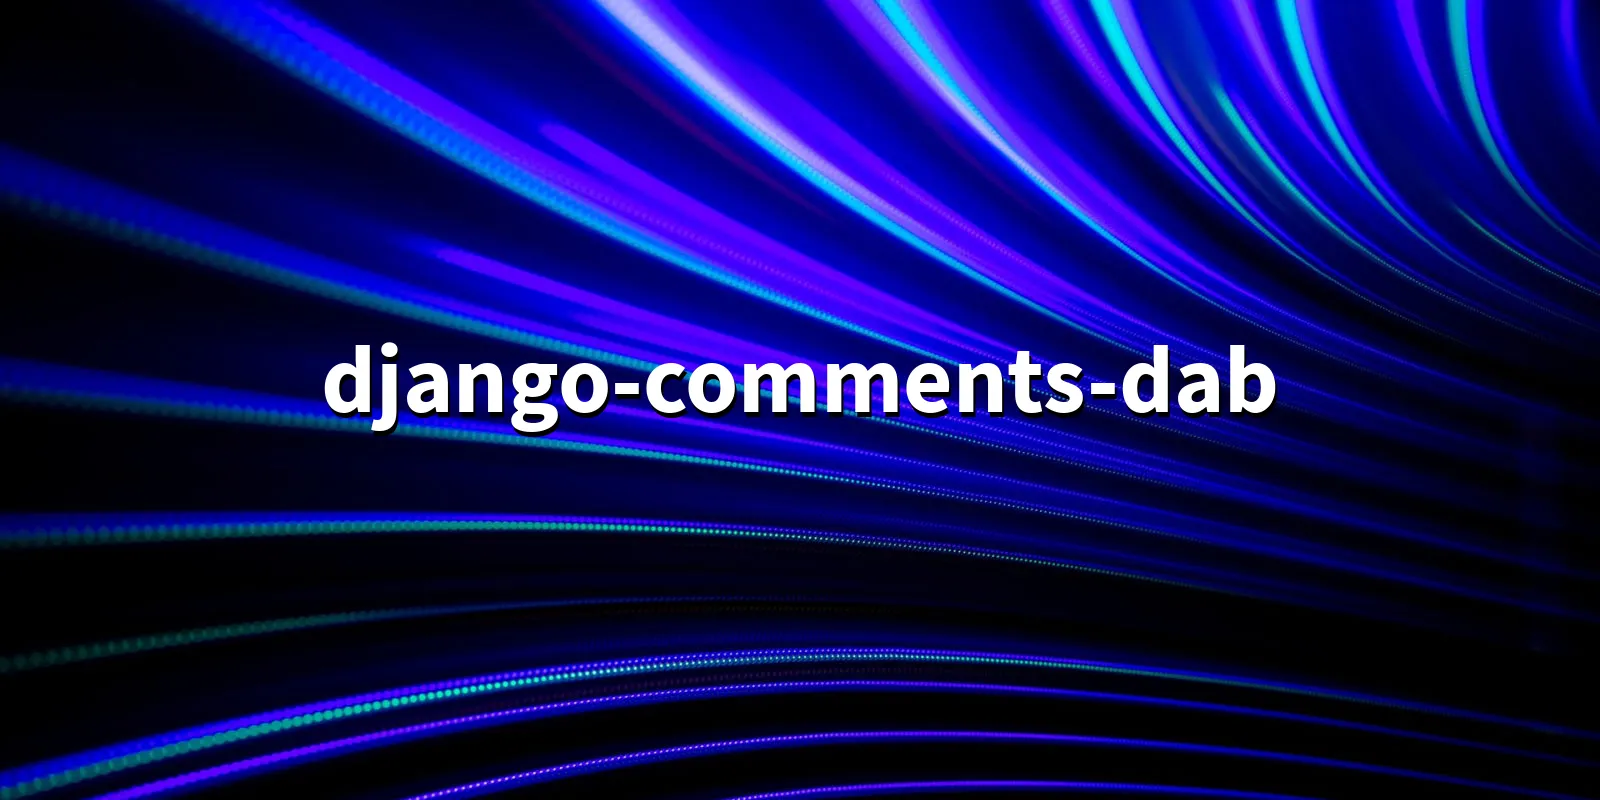 /pkg/d/django-comments-dab/django-comments-dab-banner.webp